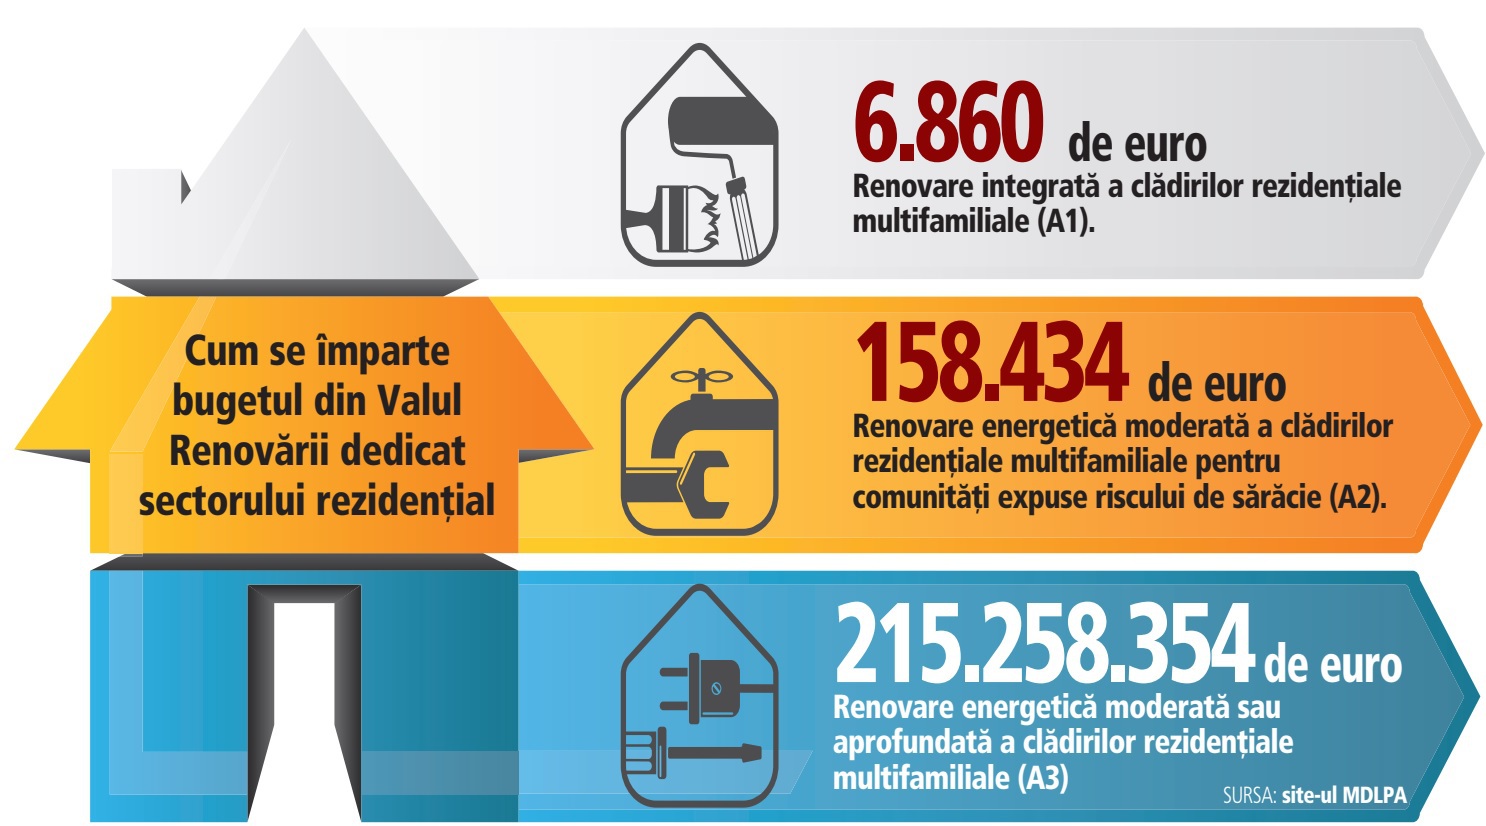 Blocurile intră în vizorul programului Valul Renovării: costurile de consolidare şi renovare sunt cuprinse între 200 şi 500 de euro pe metru pătrat